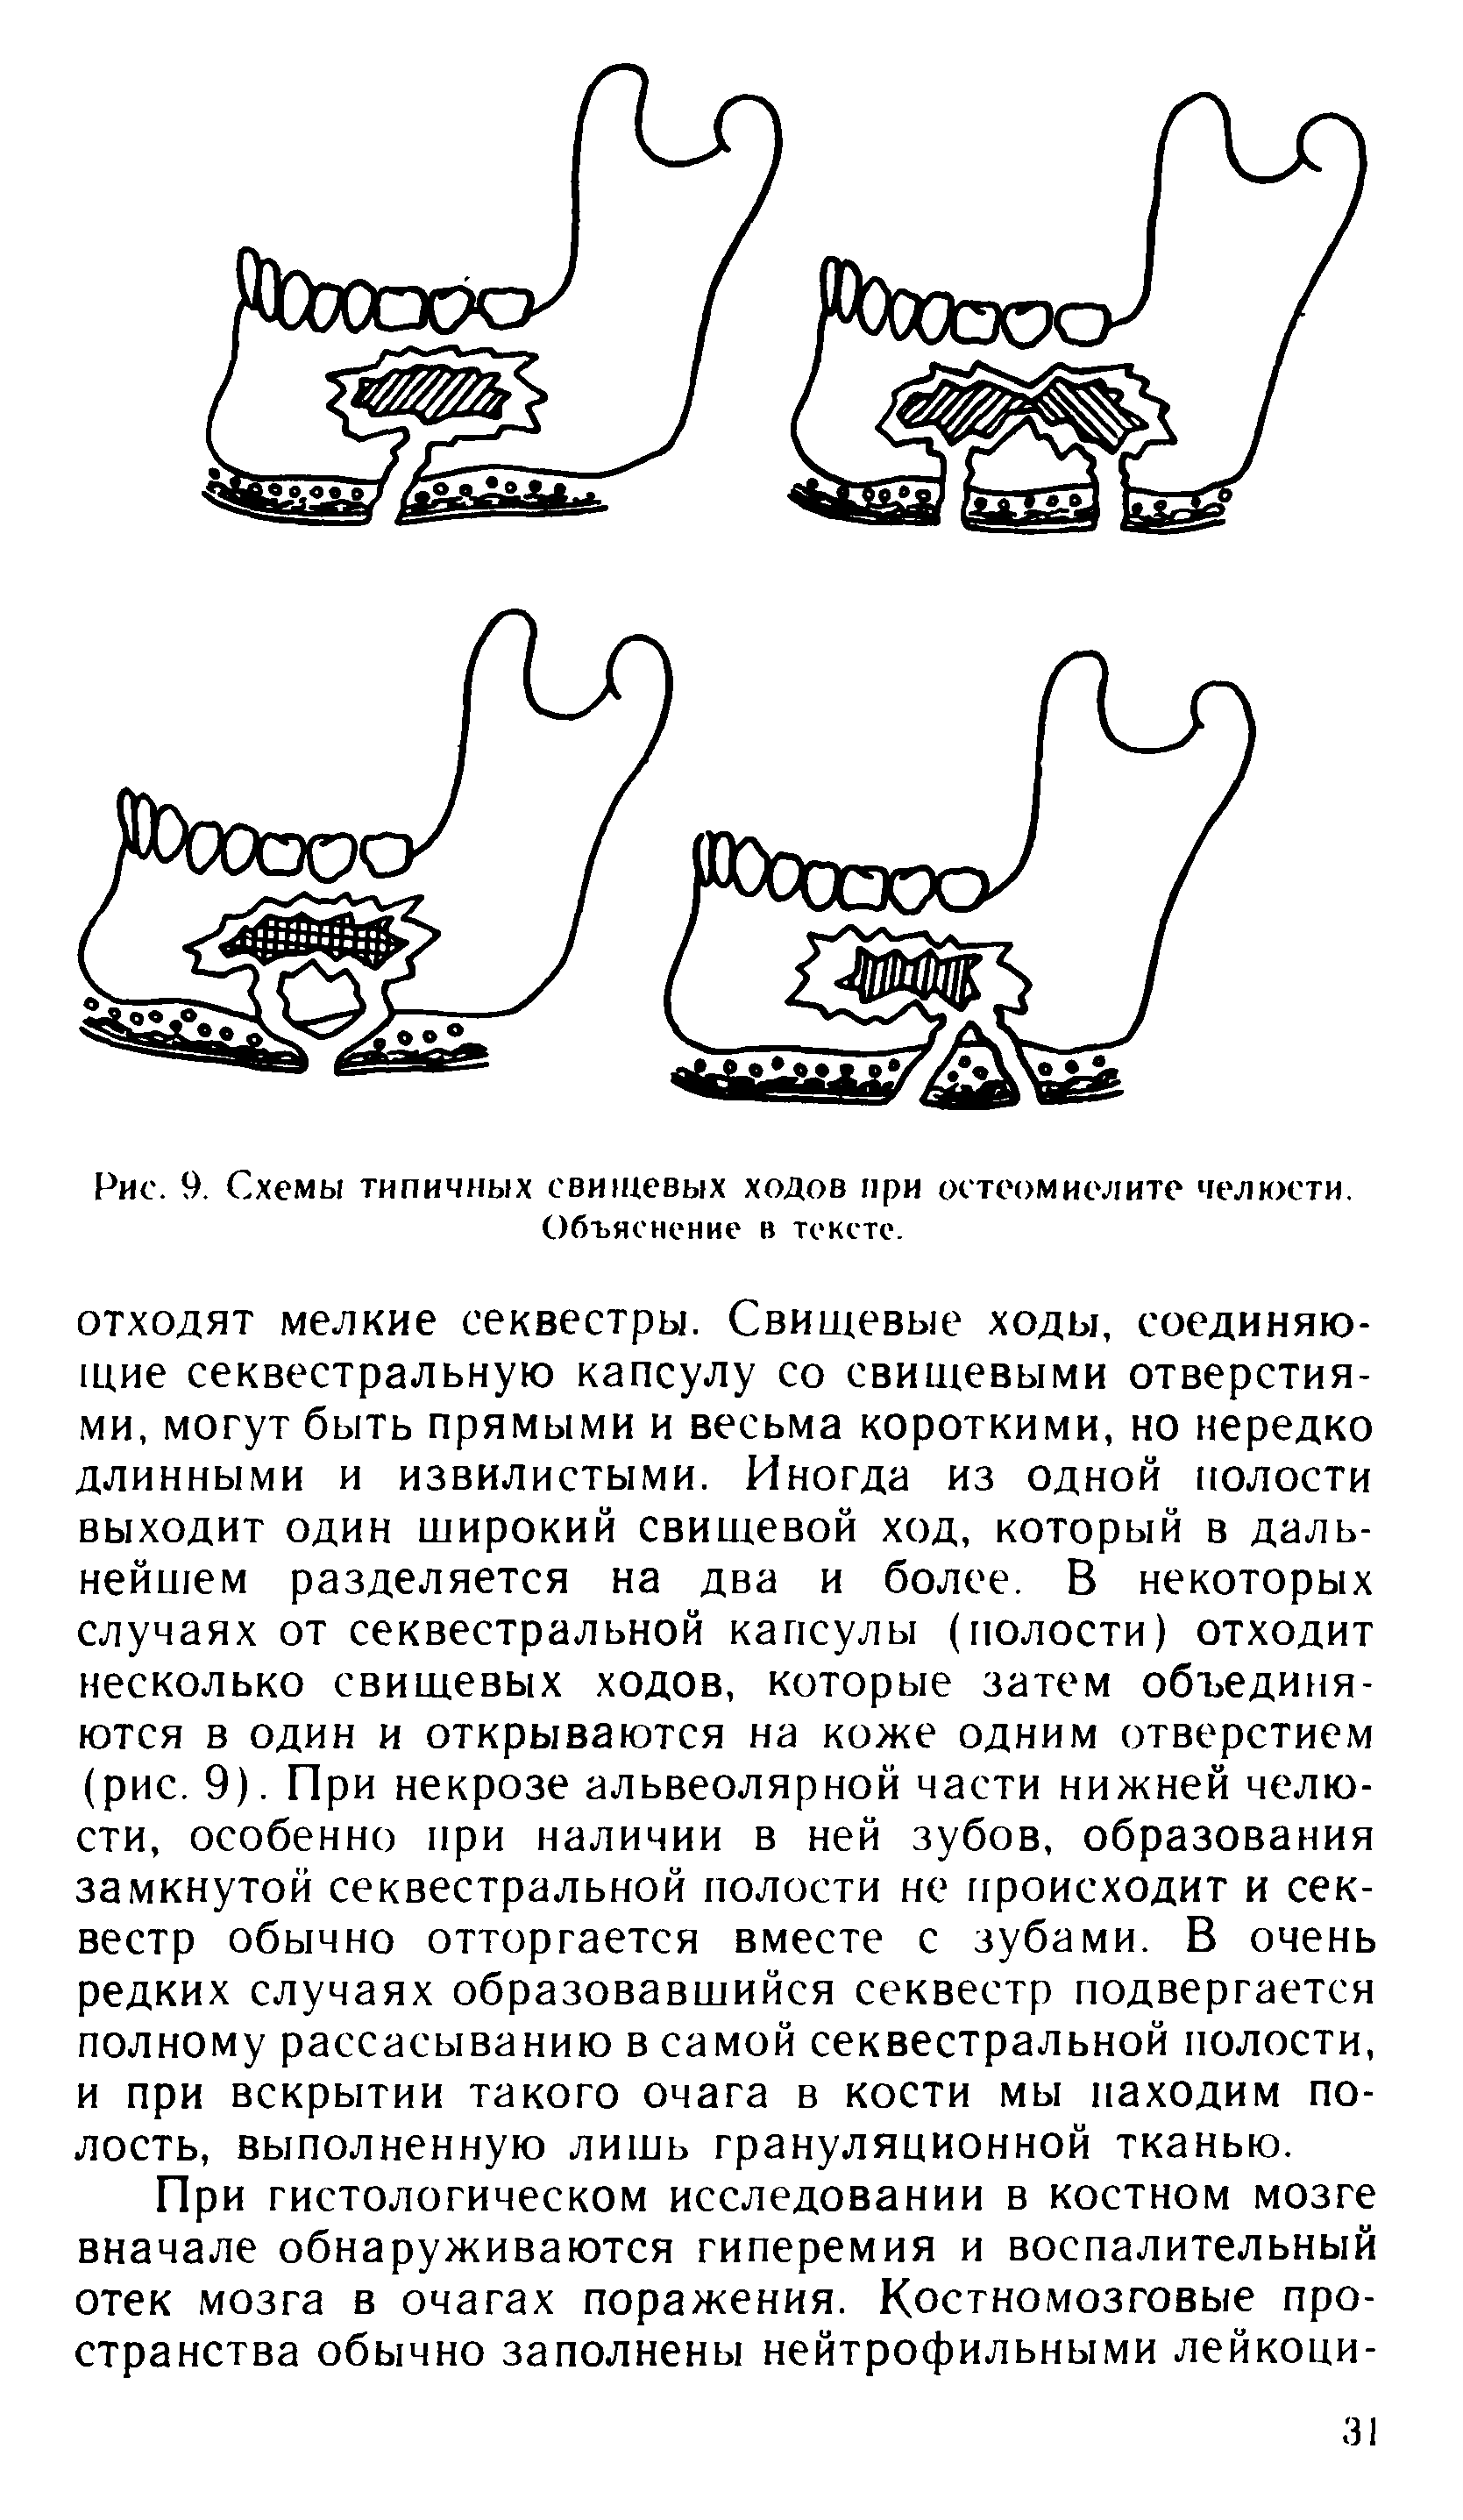 Рис. 9. Схемы типичных свищевых ходов при остеомиелите челюсти. Объяснение в тексте.